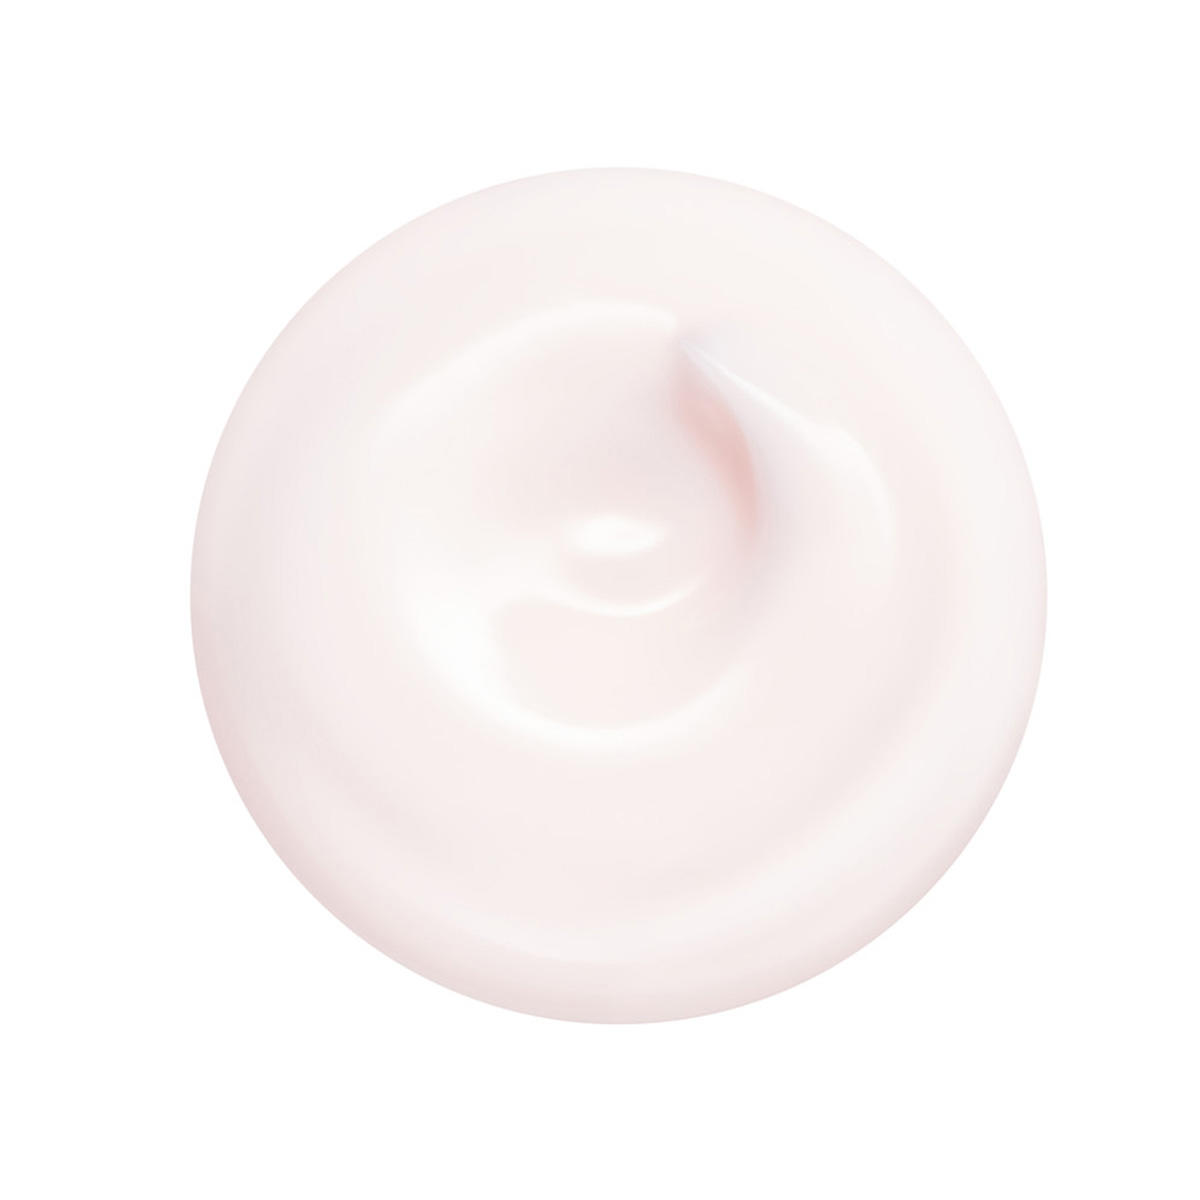 Shiseido Essential Energy Crème hydratante édition limitée 30 ml - 3